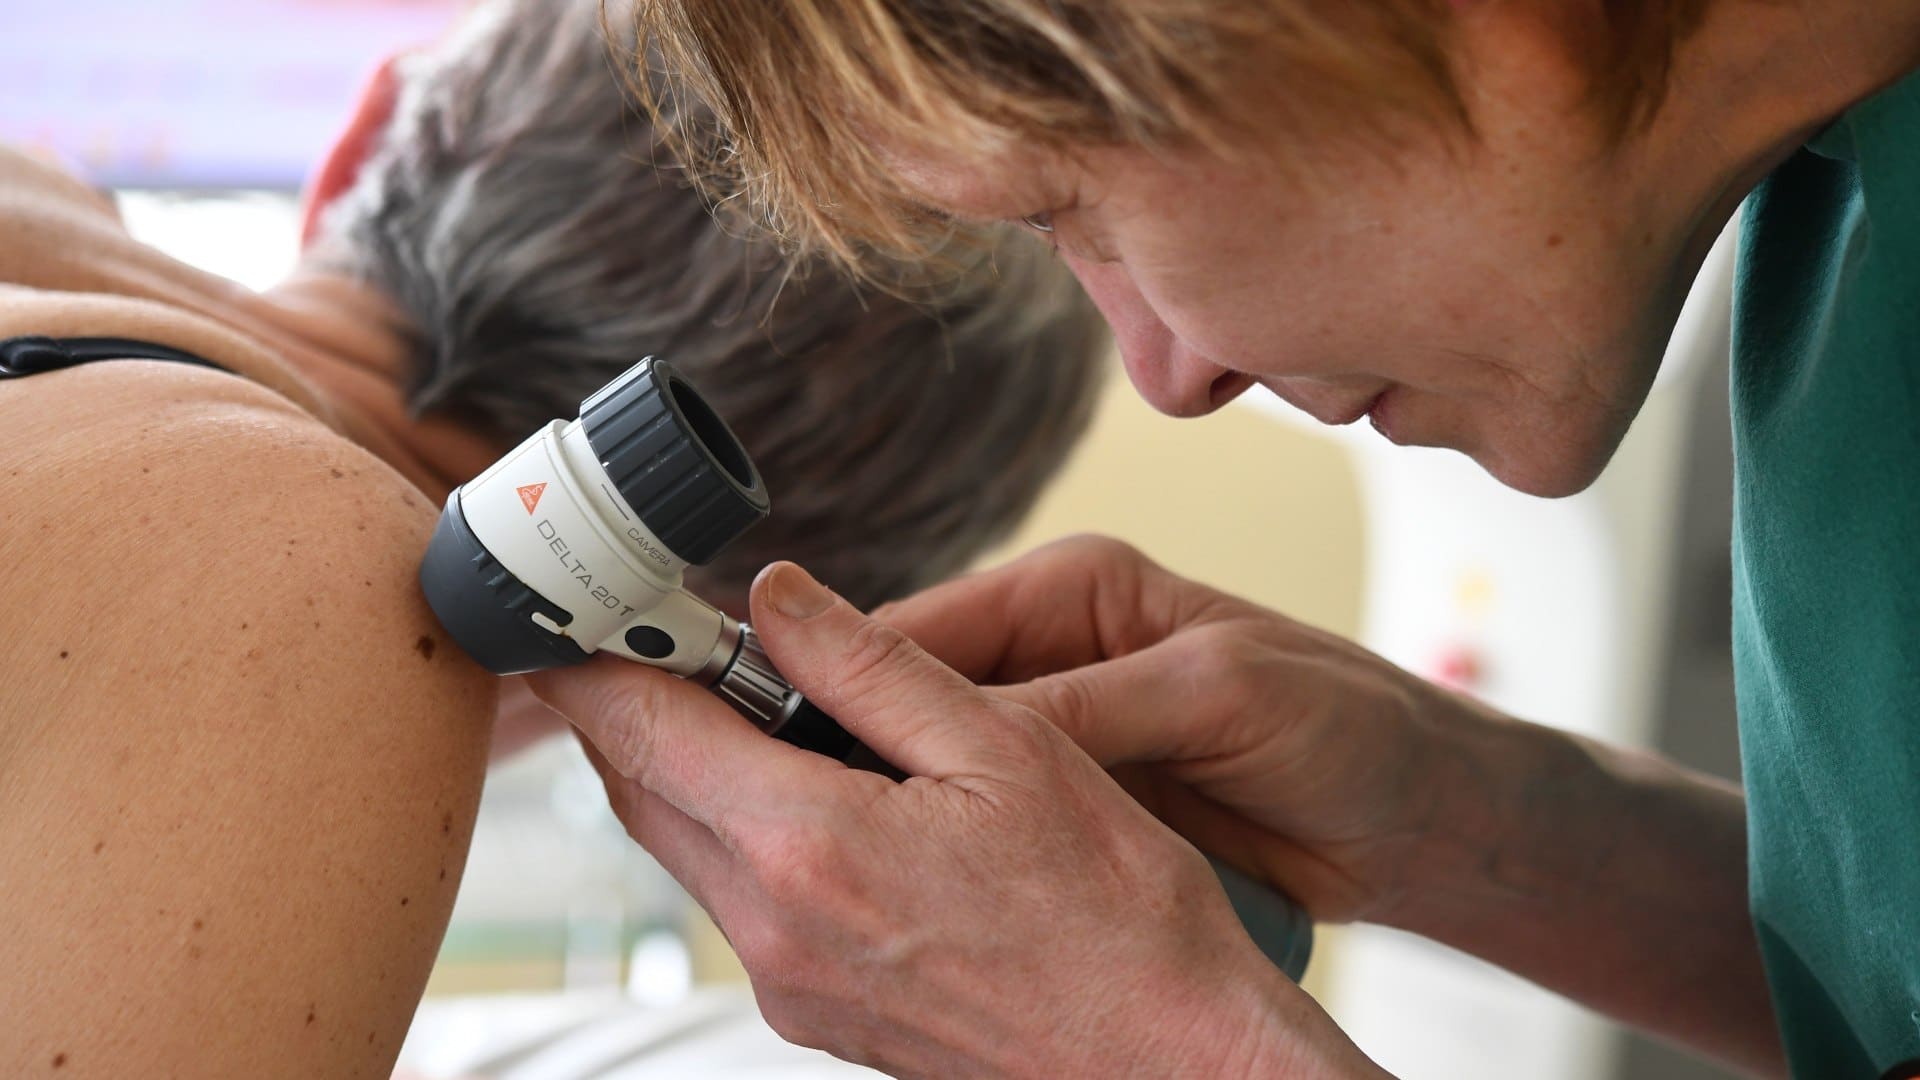 A dermatologist checks moles on a patient.